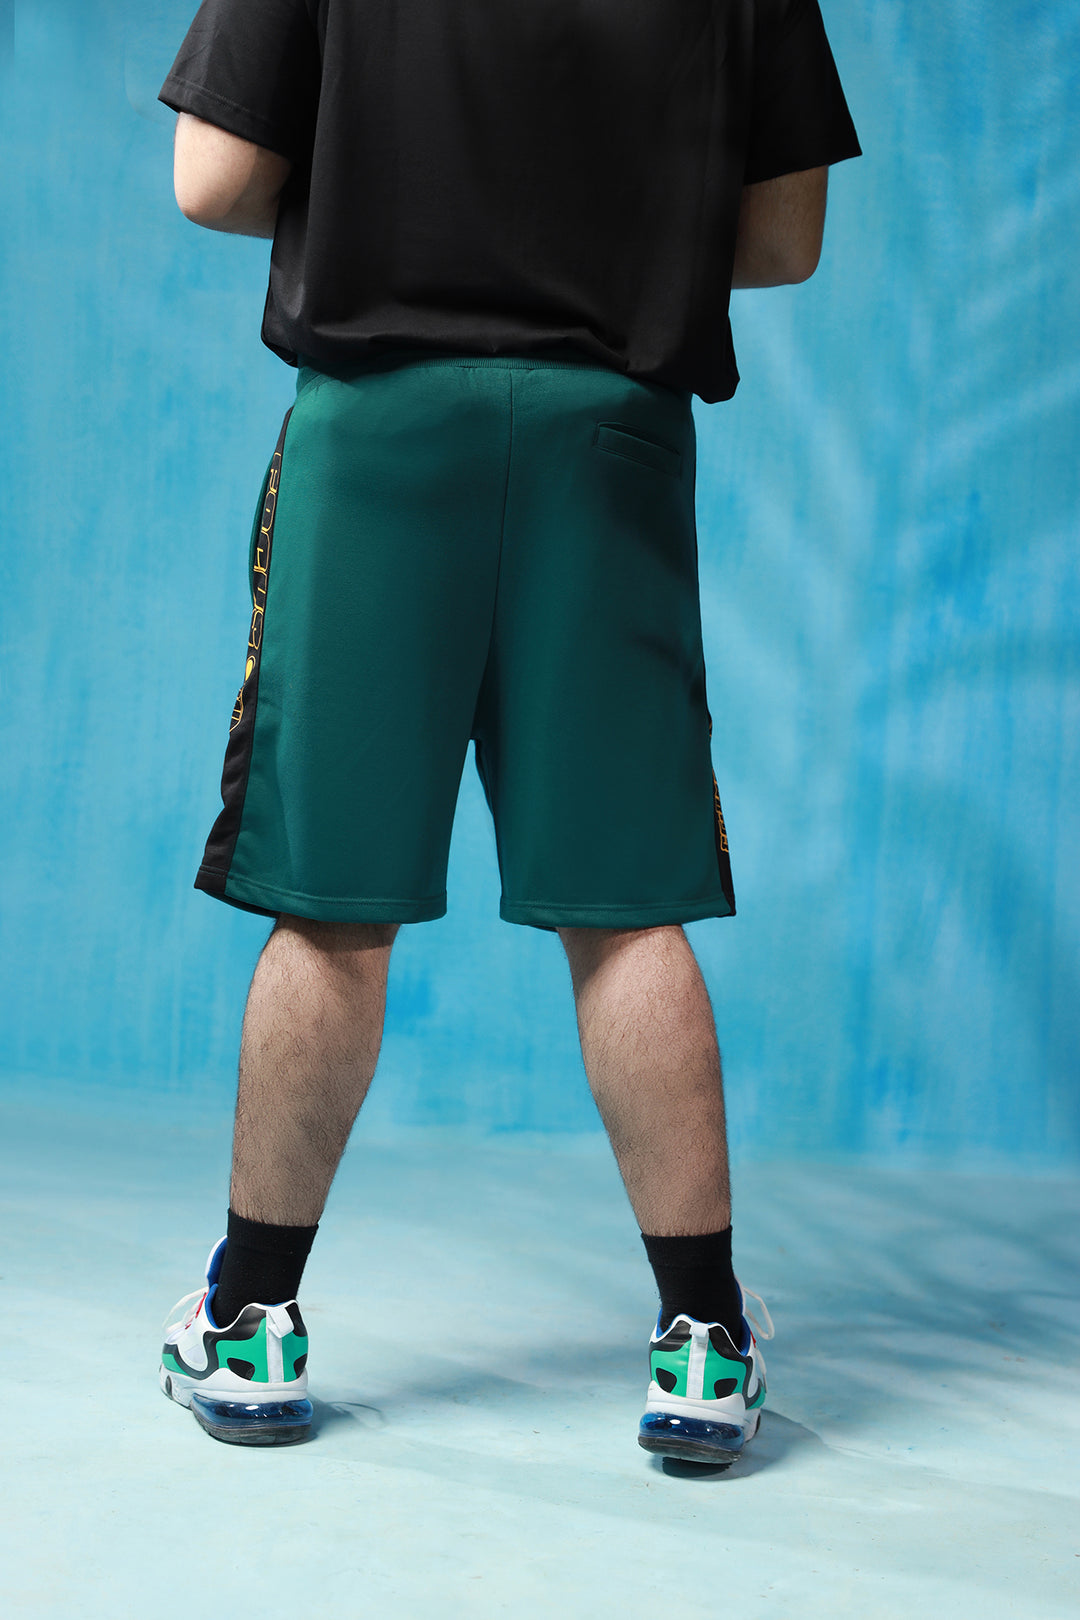 Focus Teal Shorts (Plus Size) - S21 - MSH013P